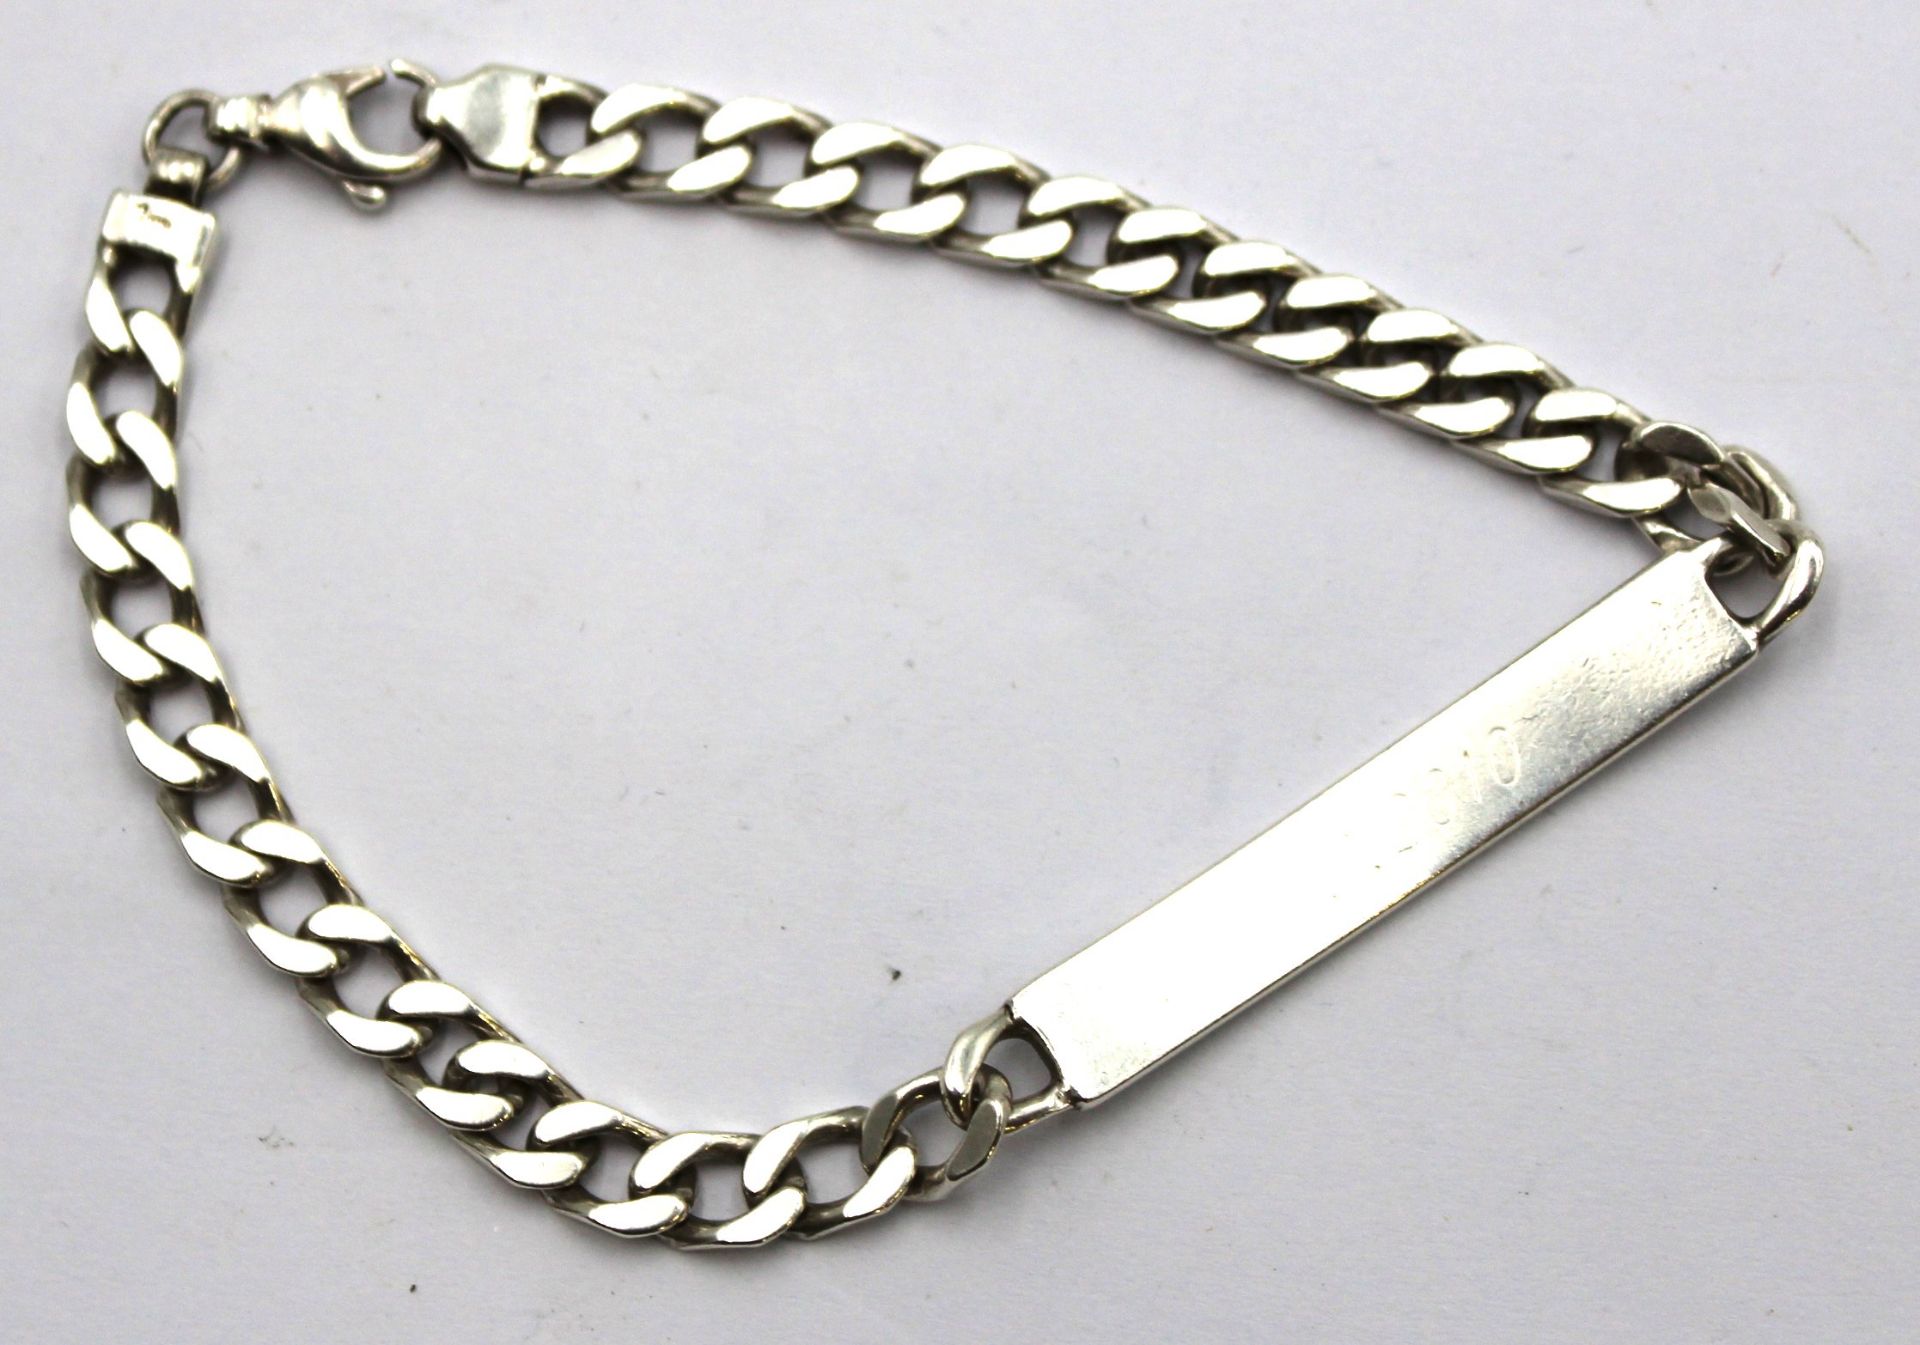 Identitäts-Armband, 925er Silber, 16,8gr. . schwache kaum lesbare Gravuren, L-18cm. - Bild 2 aus 2